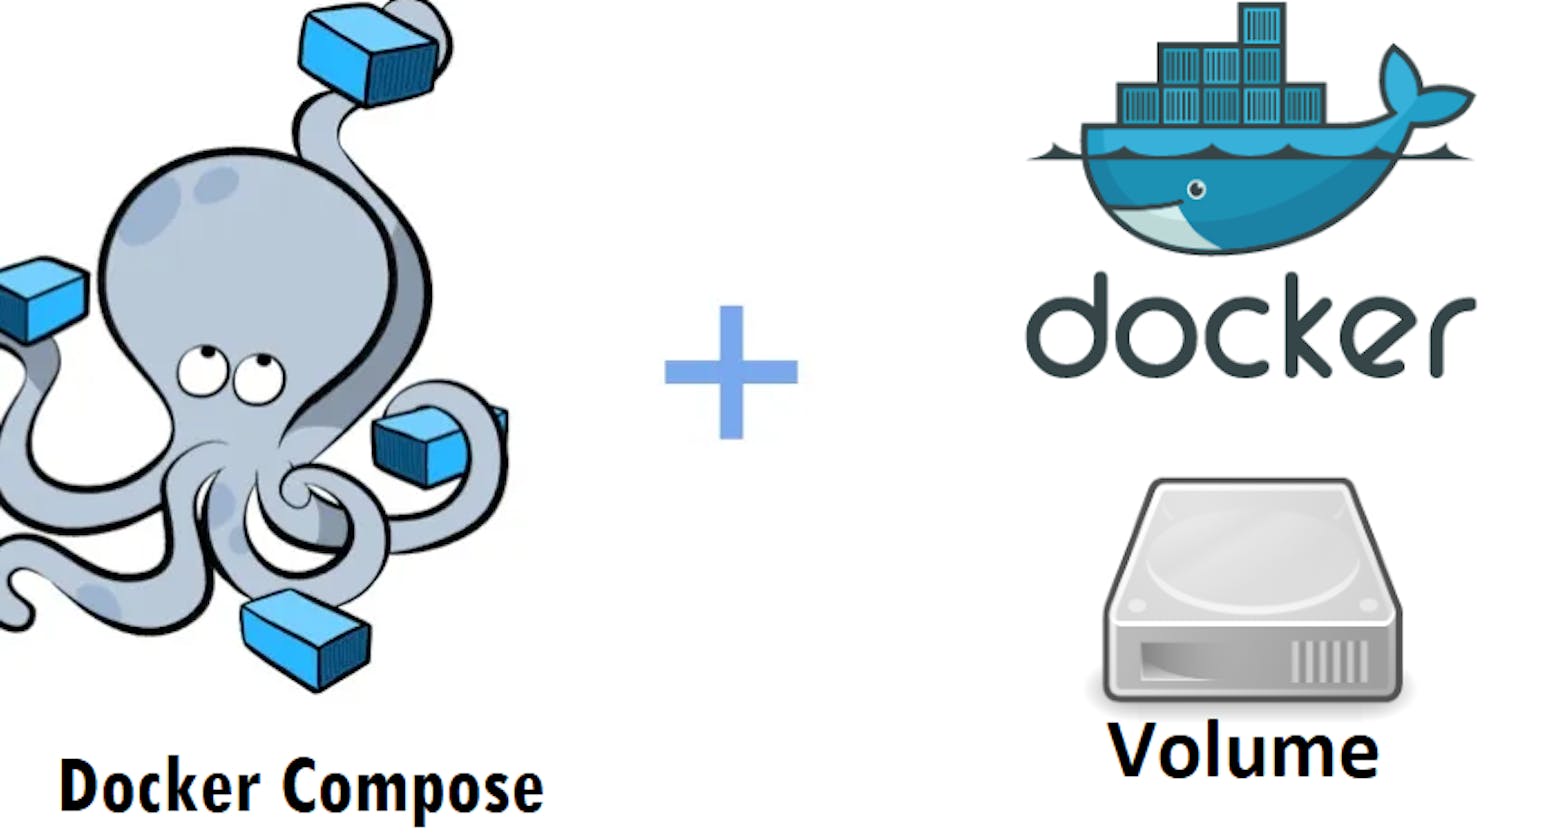 Docker Volume & Docker Compose